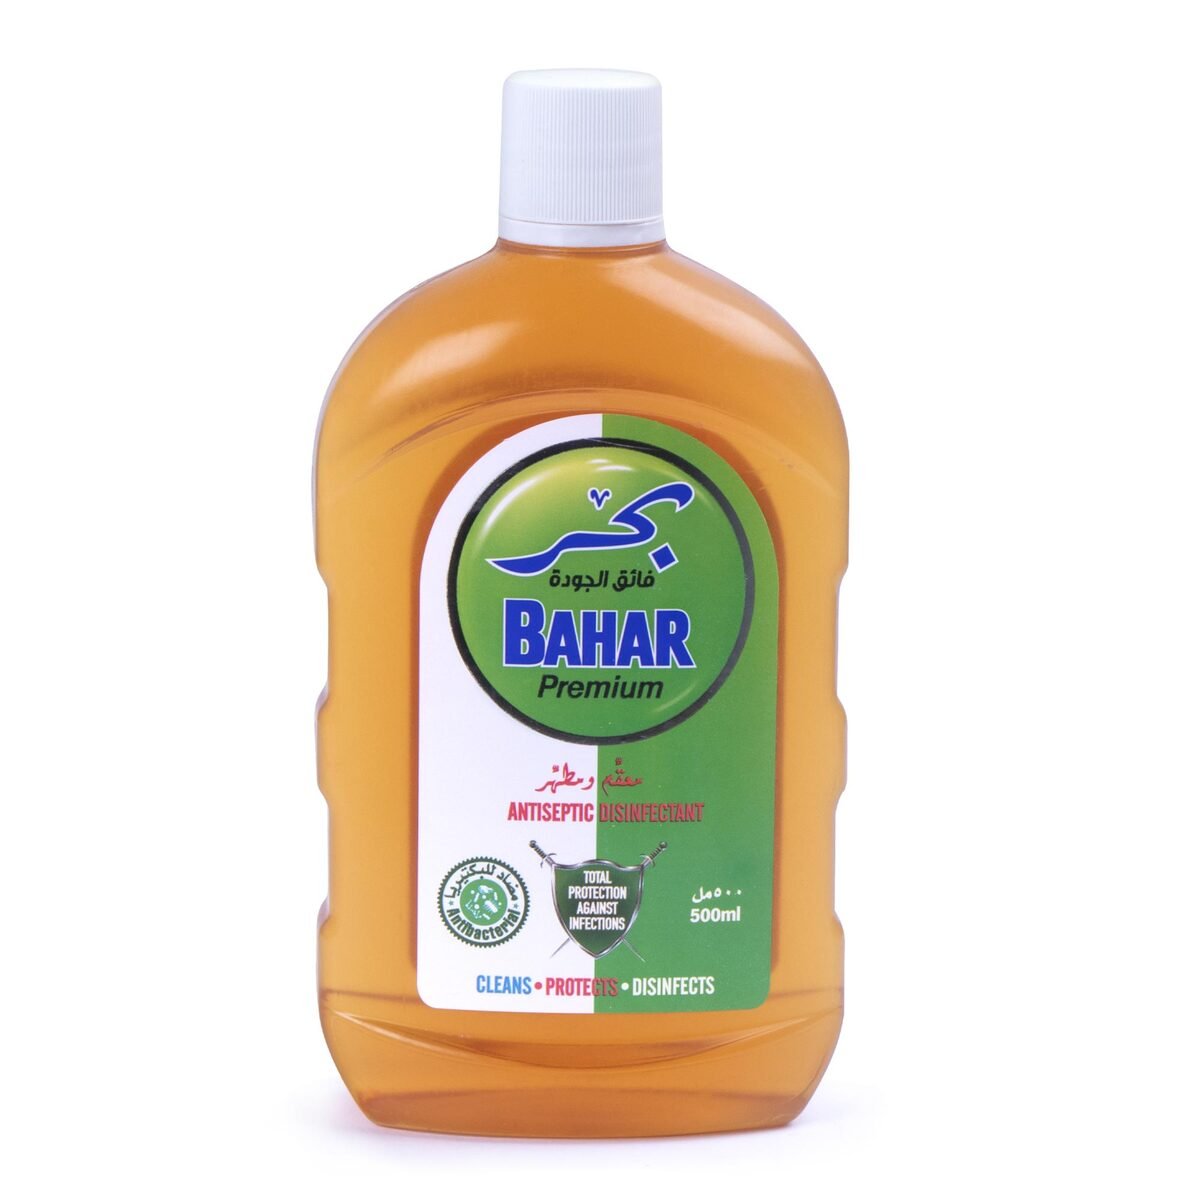 Bahar Anti Septic Disinfectant  Premium  500ml